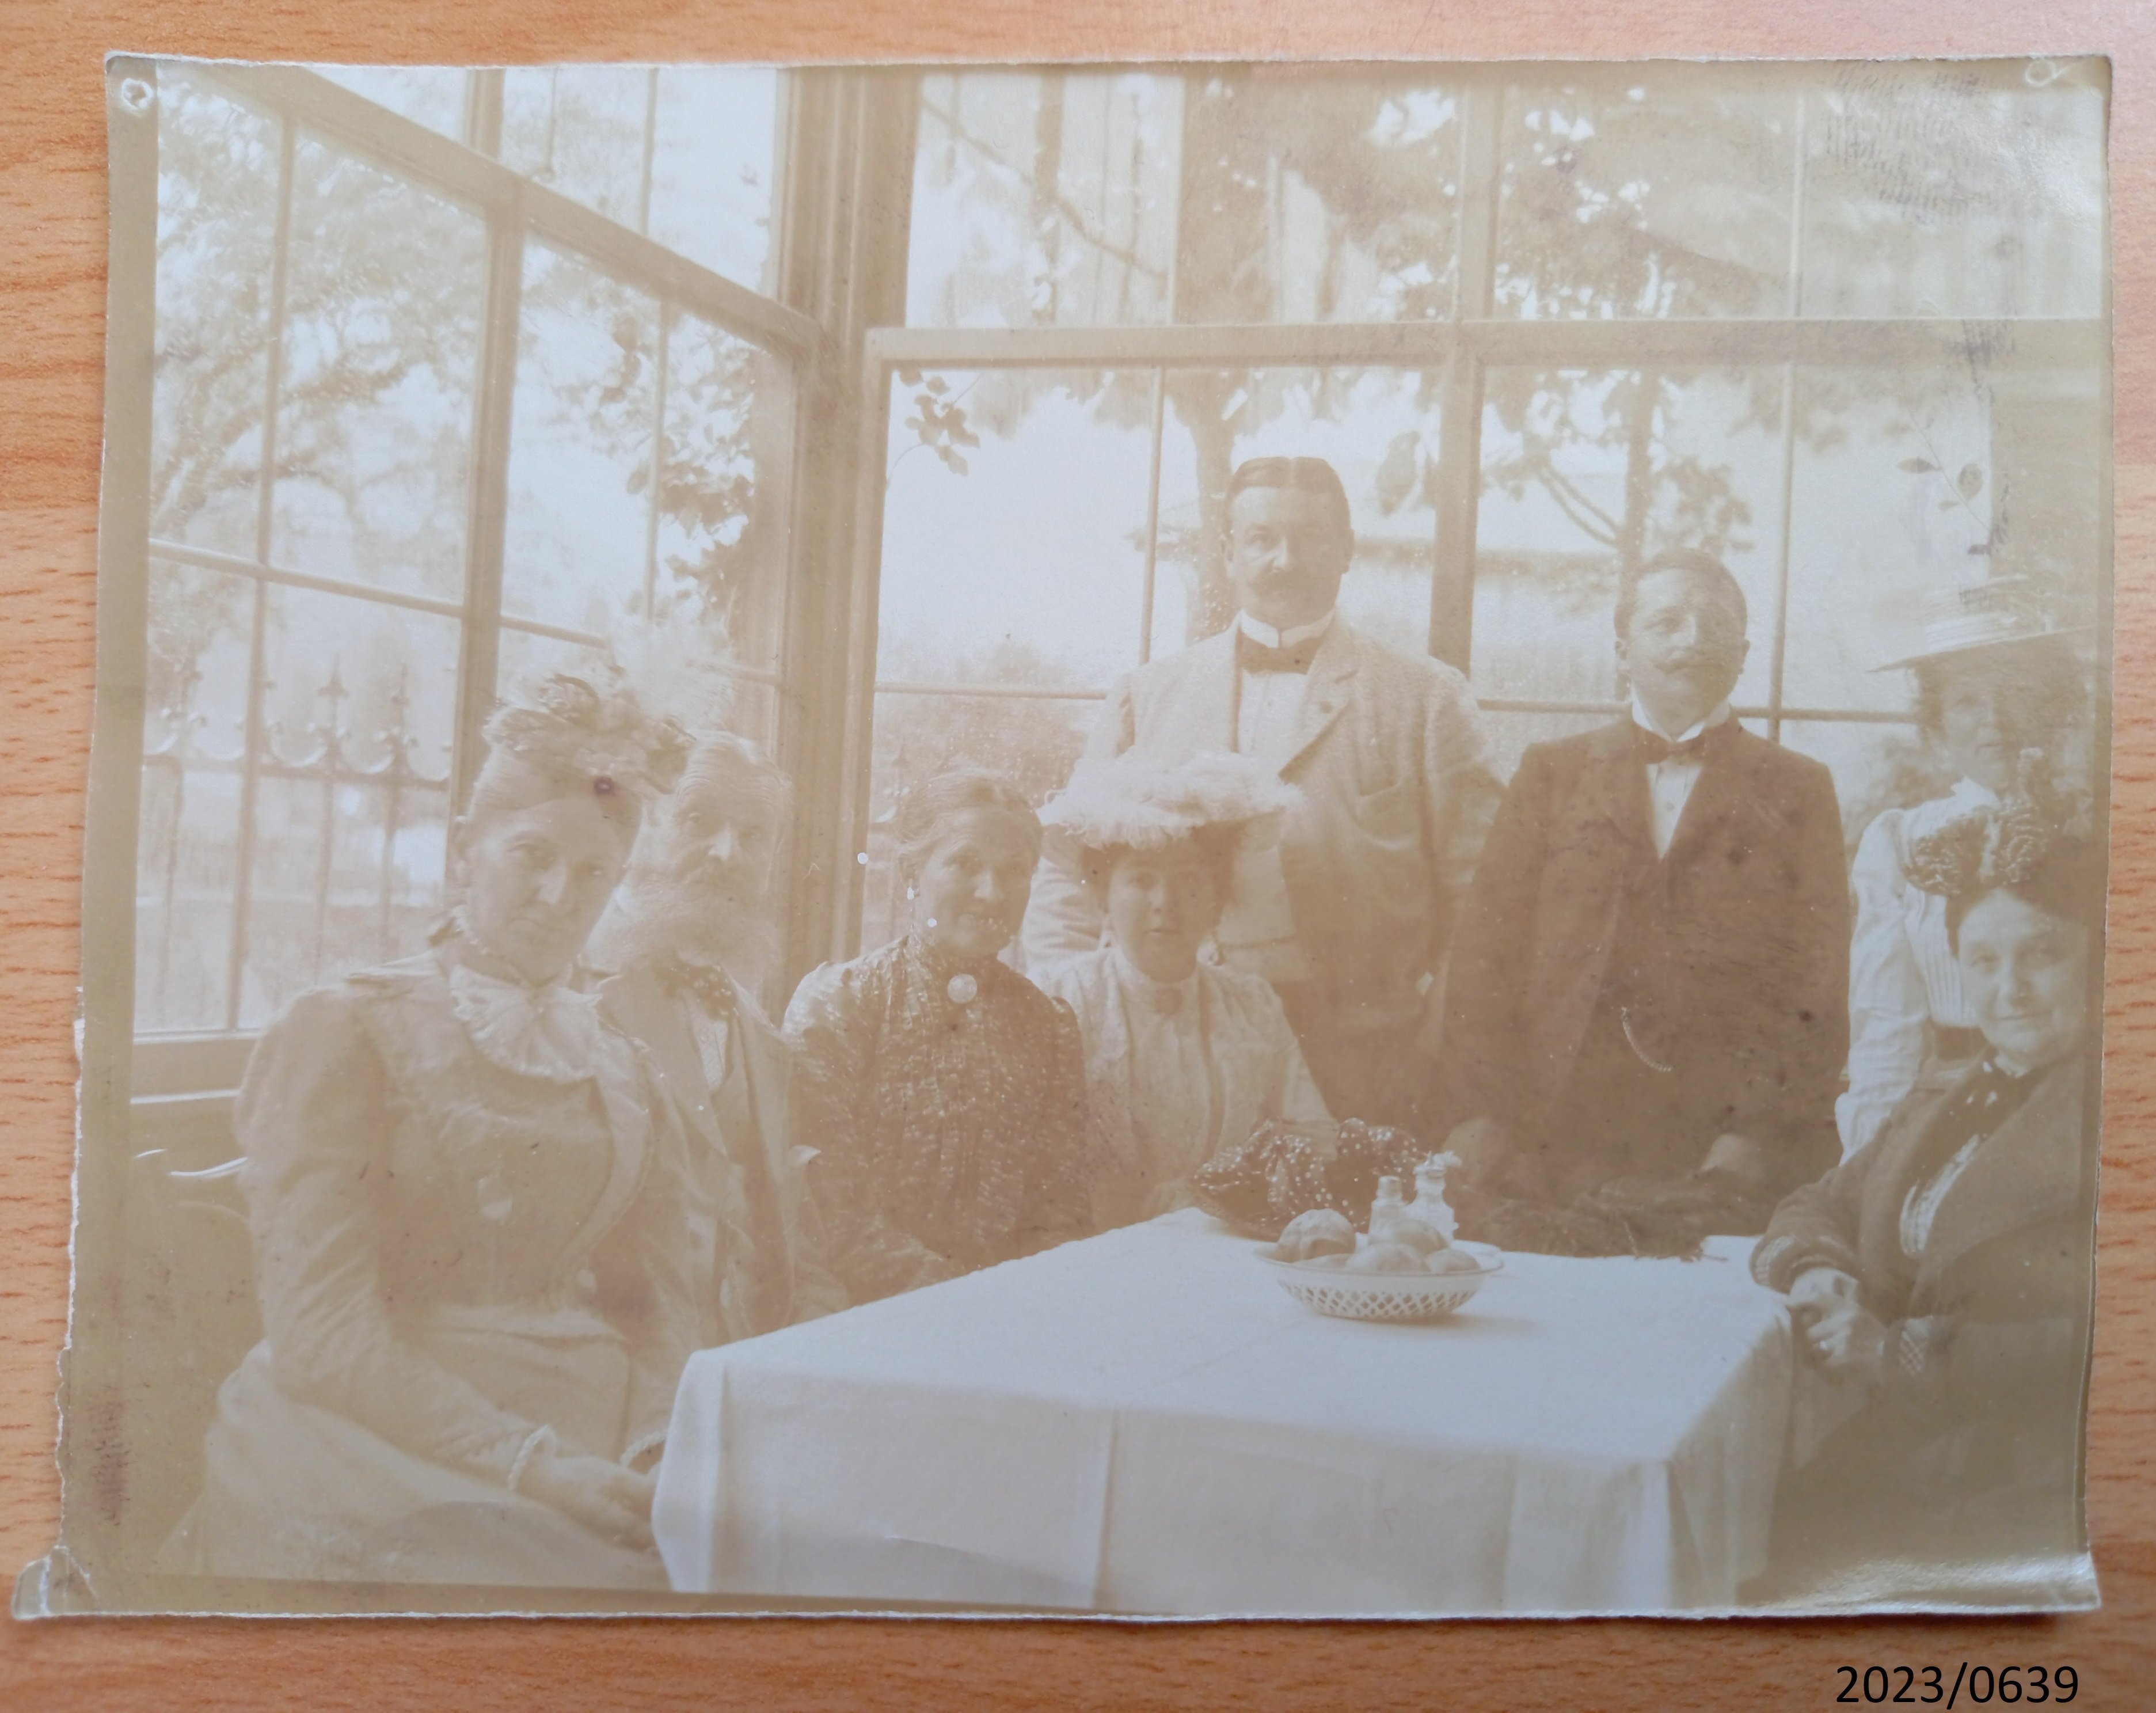 Fotografie von 8 Personen in einem Wintergarten (Stadtmuseum Bad Dürkheim im Kulturzentrum Haus Catoir CC BY-NC-SA)